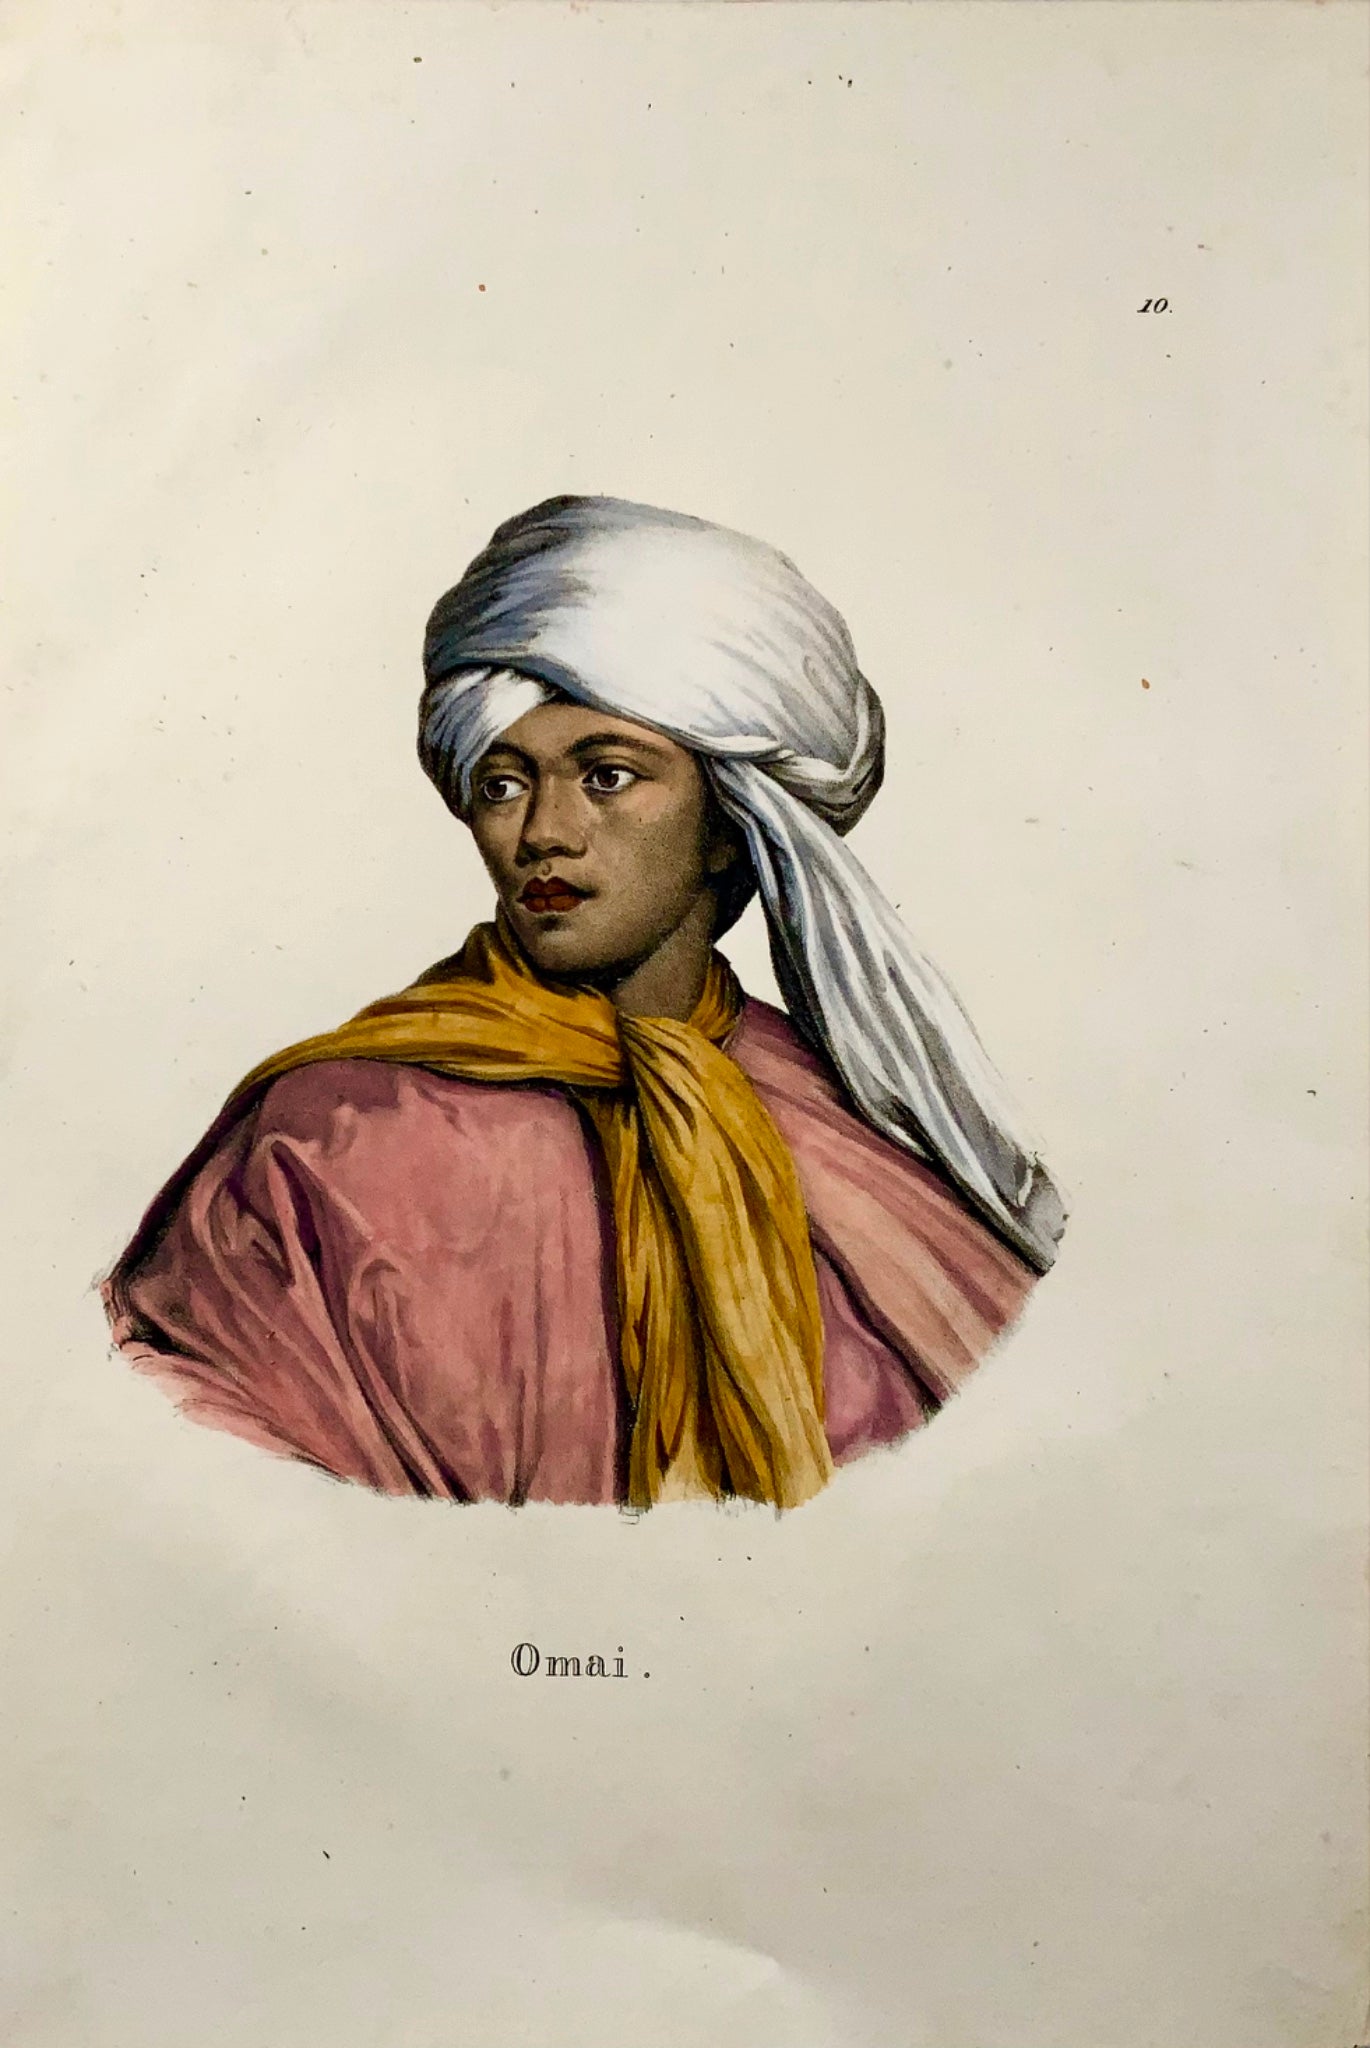 1824 Omai, Mai, insulaire du Pacifique, Brodtmann, folio, lithographie sur pierre, ethnologie